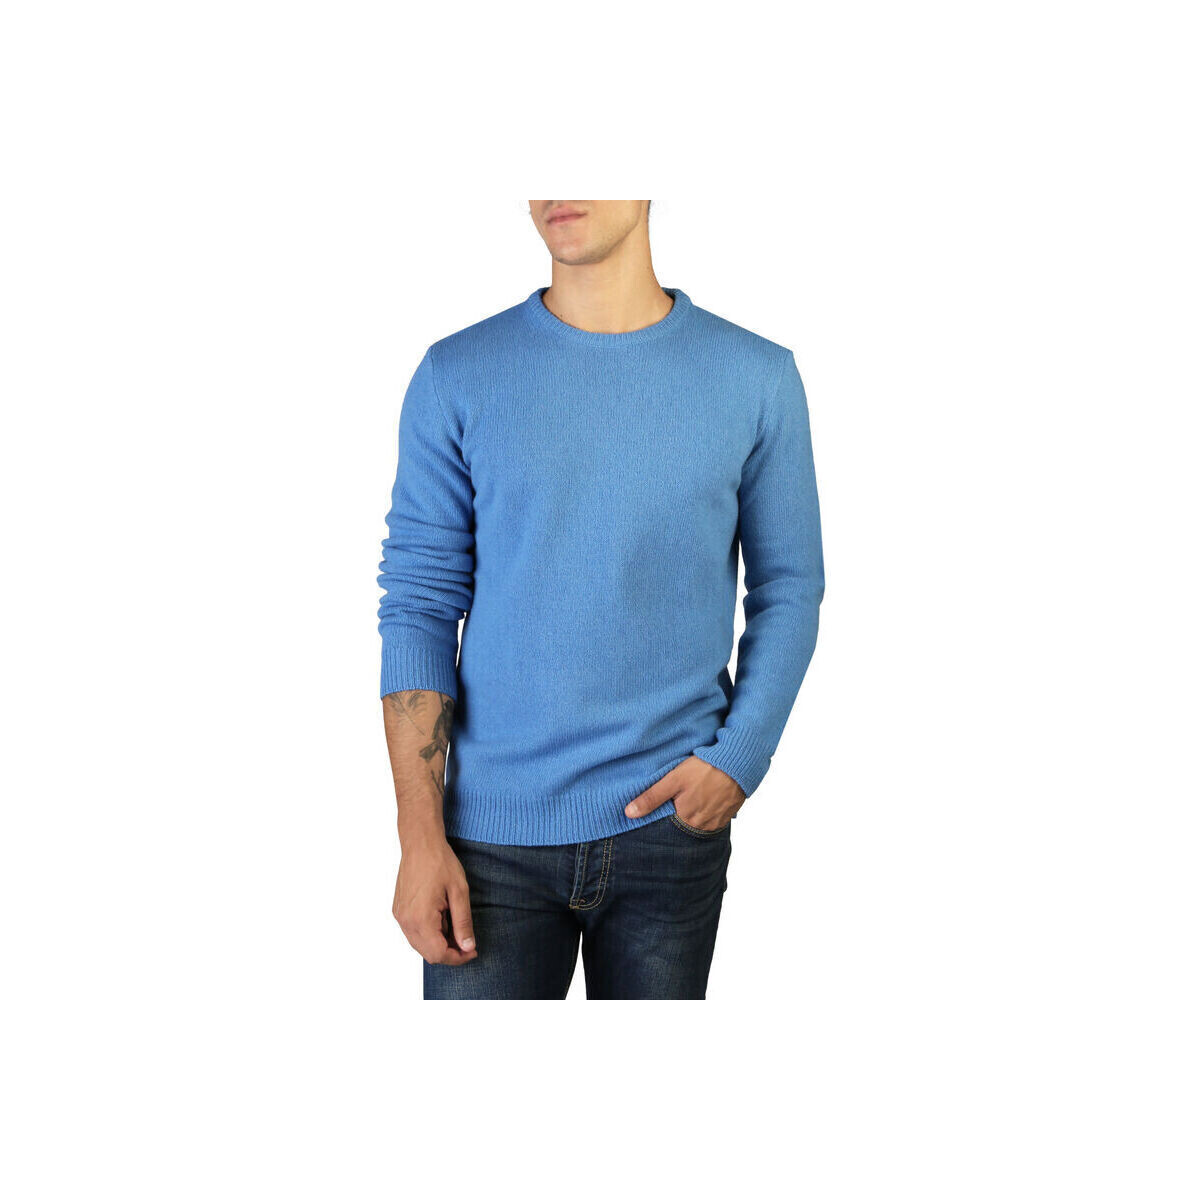 Textil Muži Svetry 100% Cashmere Jersey Modrá